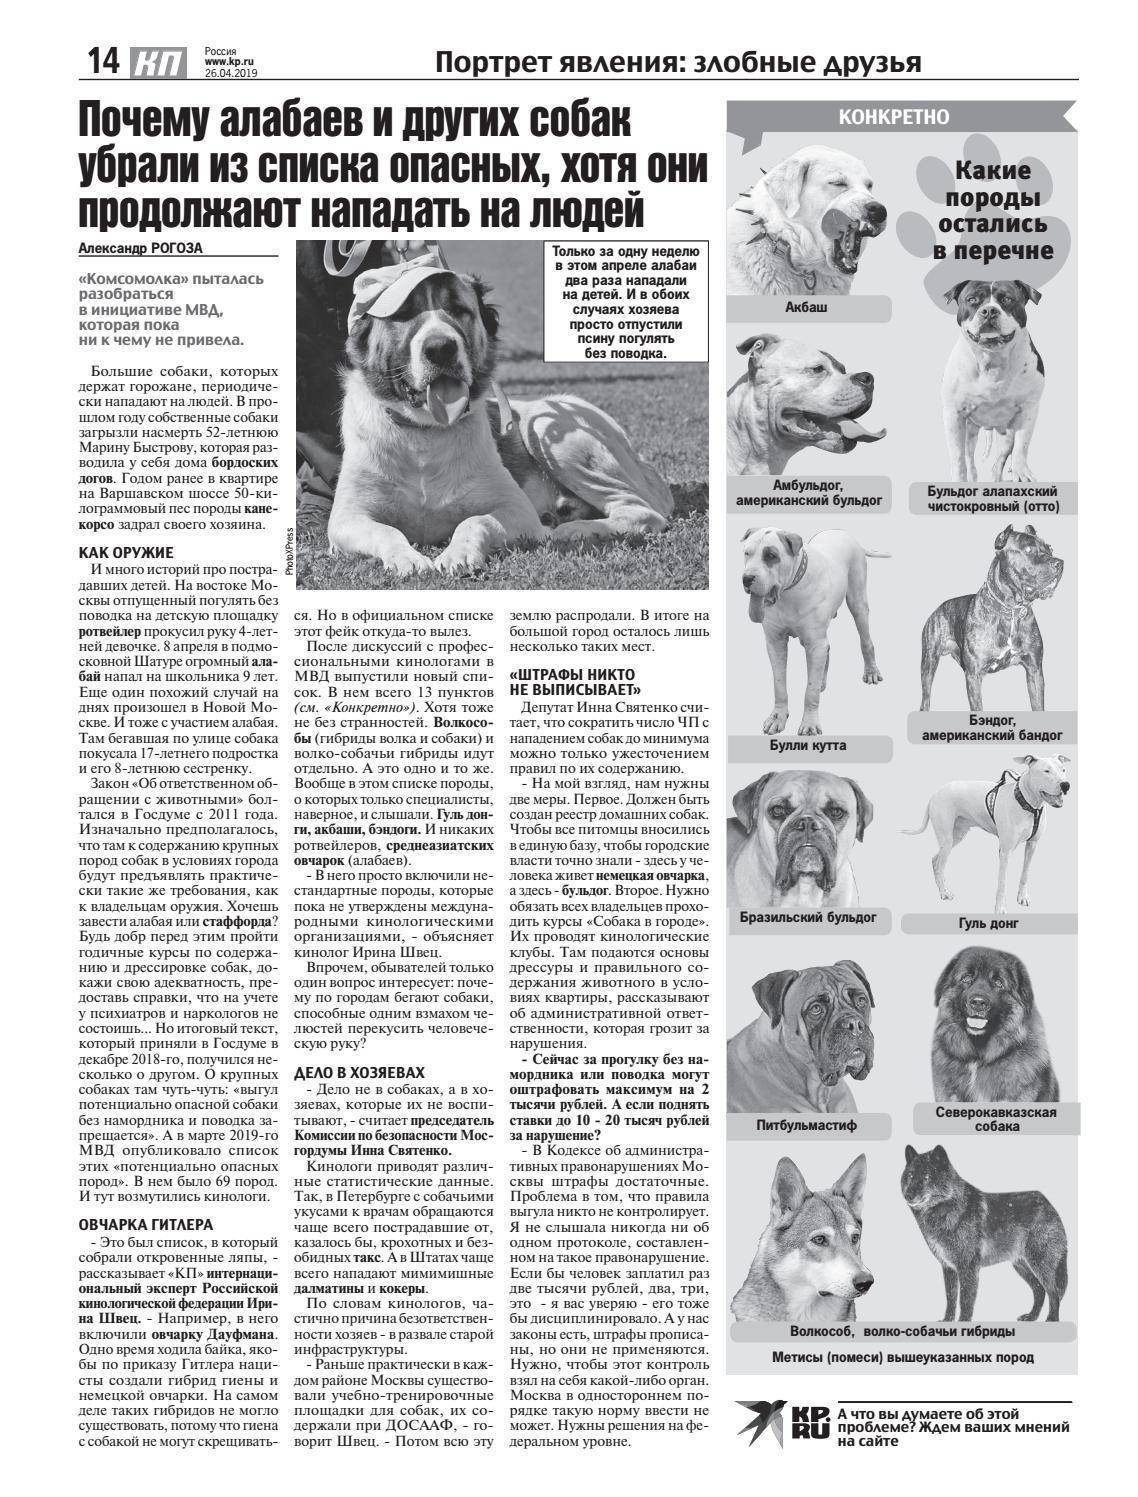 Потенциально опасные собаки рф. Список опасных пород собак 2021. Список опасных собак запрещенных в России. Список потенциально опасных пород собак в России 2021. Опасные породы собак список в РФ 2021.